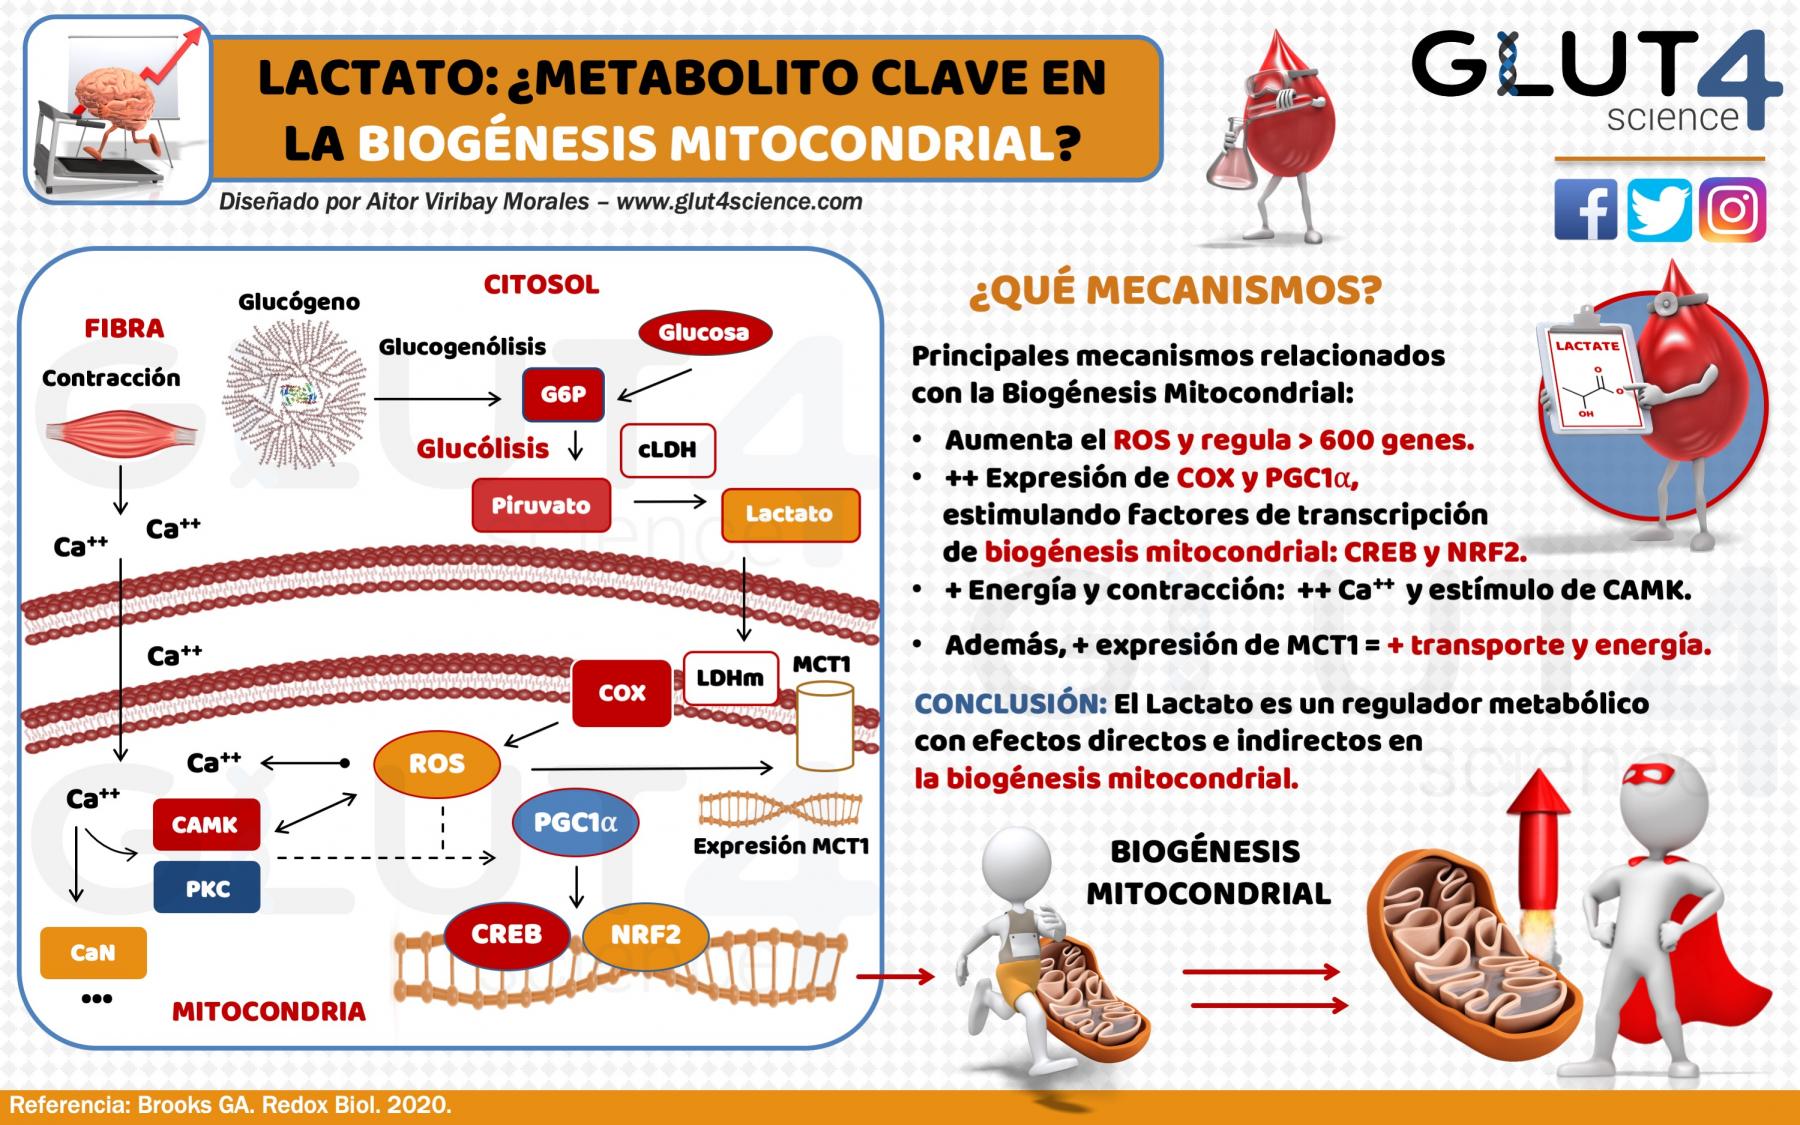 Lactato y Biogénesis Mitocondrial: ¿Un metabolito clave?